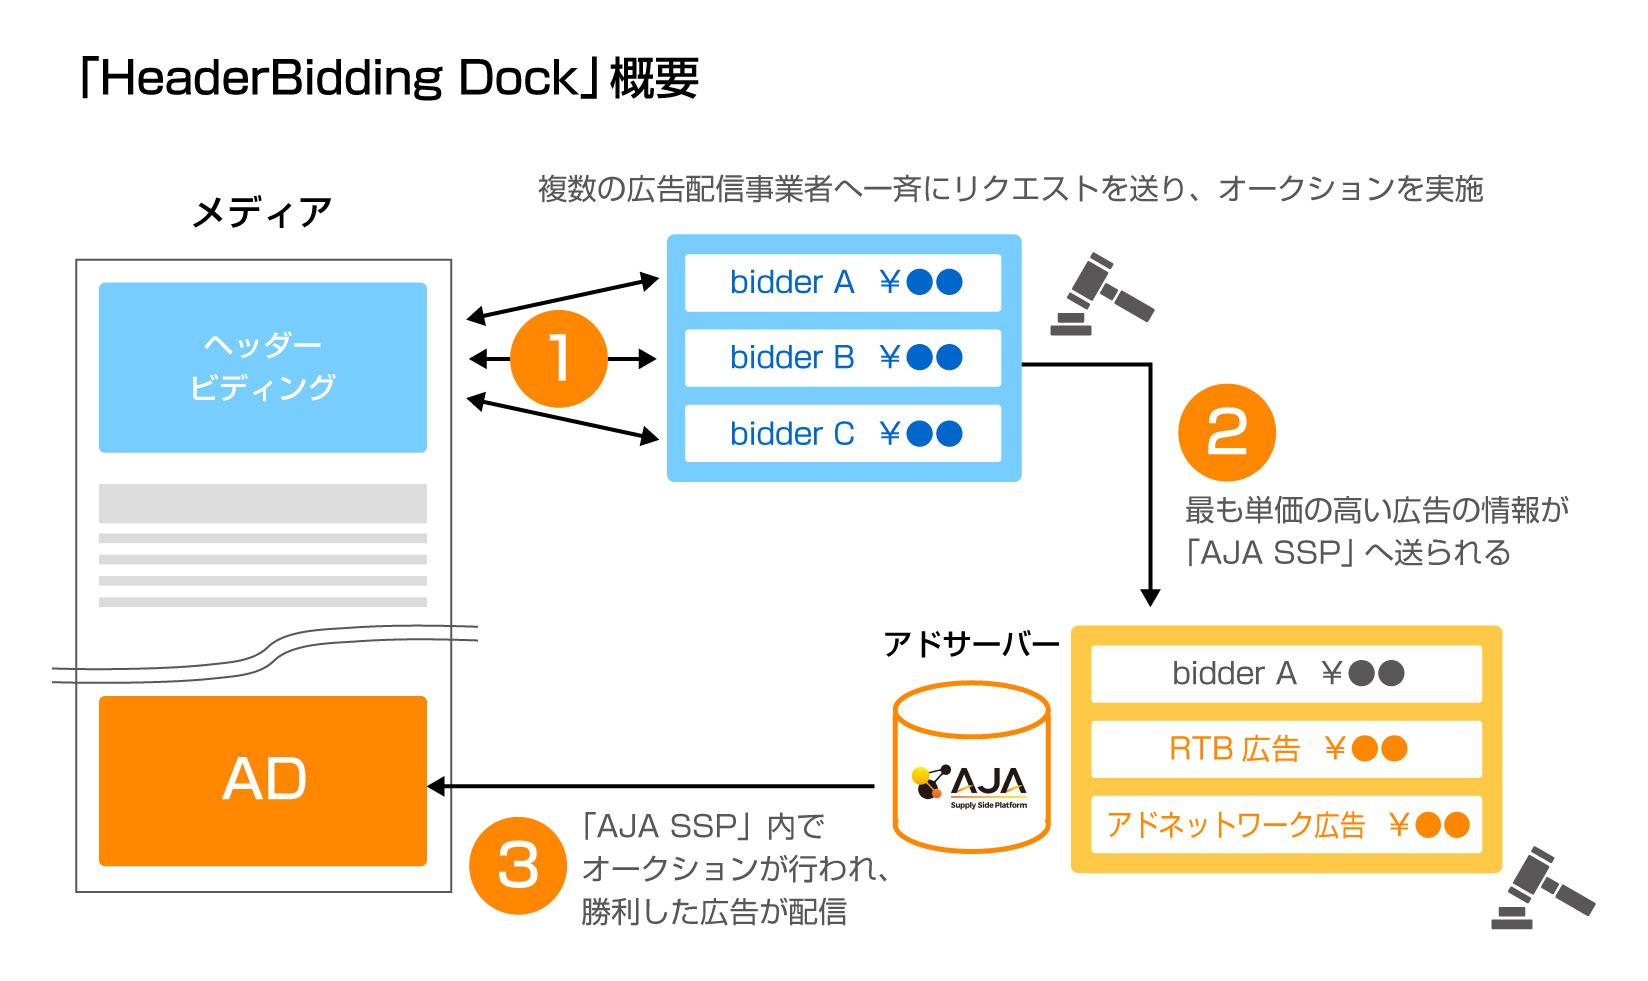 サイバーエージェントの「AJA SSP」、ヘッダービディング機能「HeaderBidding Dock」を搭載